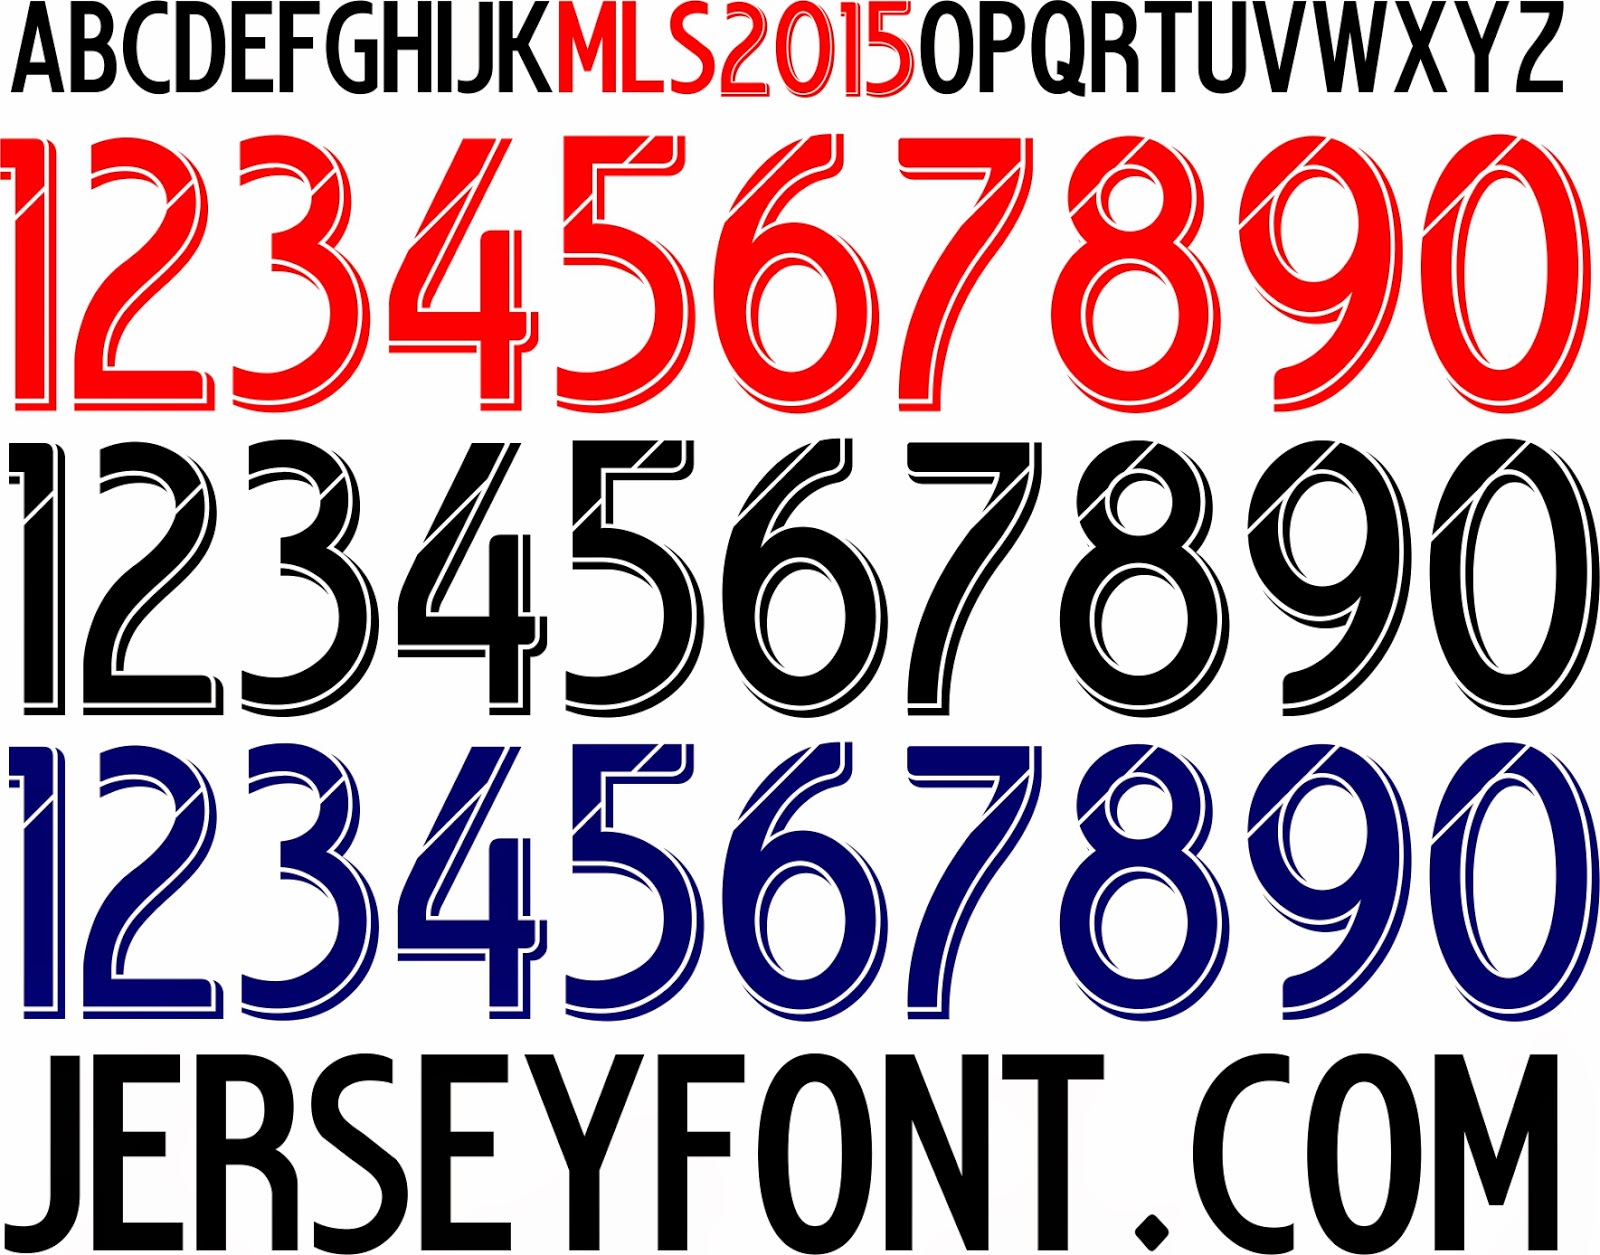 9 2015 Number Fonts Images - Presentation Design Trends ...